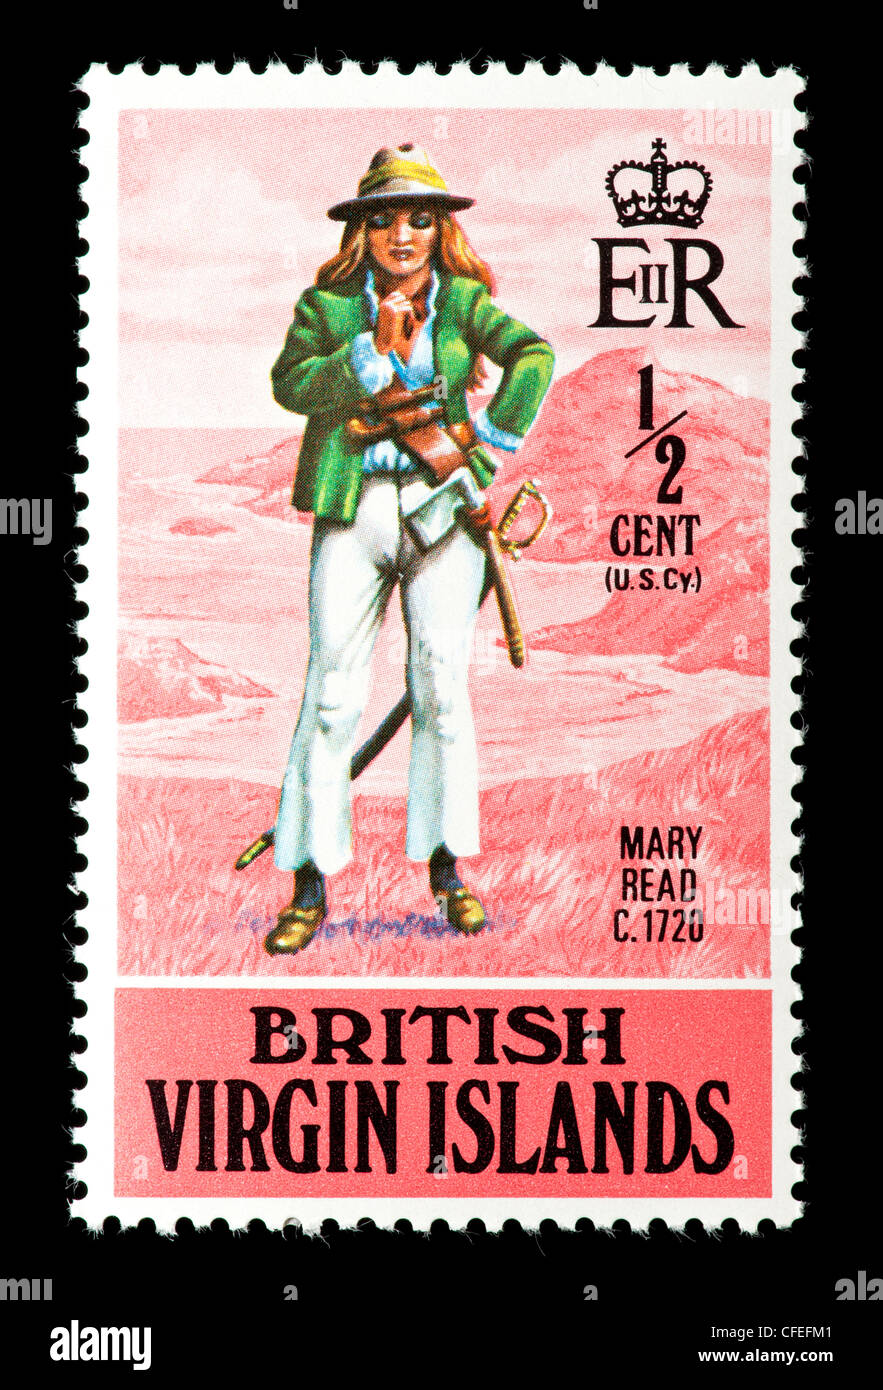 Briefmarke aus der British Virgin Islands Darstellung Mary Read um 1720, eine berühmte Frau Pirat. Stockfoto